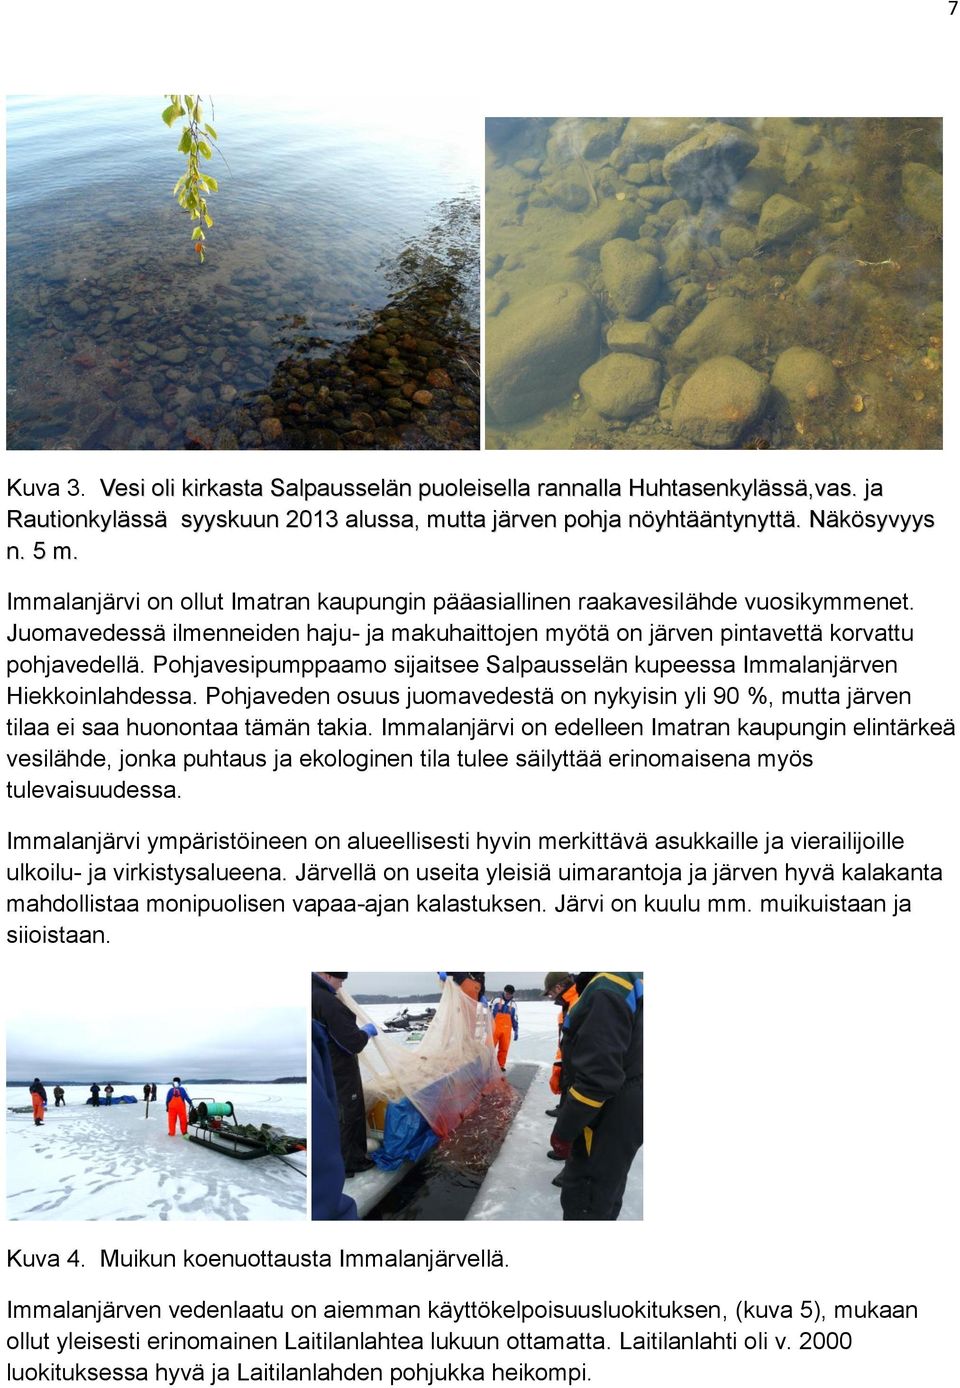 Pohjavesipumppaamo sijaitsee Salpausselän kupeessa Immalanjärven Hiekkoinlahdessa. Pohjaveden osuus juomavedestä on nykyisin yli 90 %, mutta järven tilaa ei saa huonontaa tämän takia.